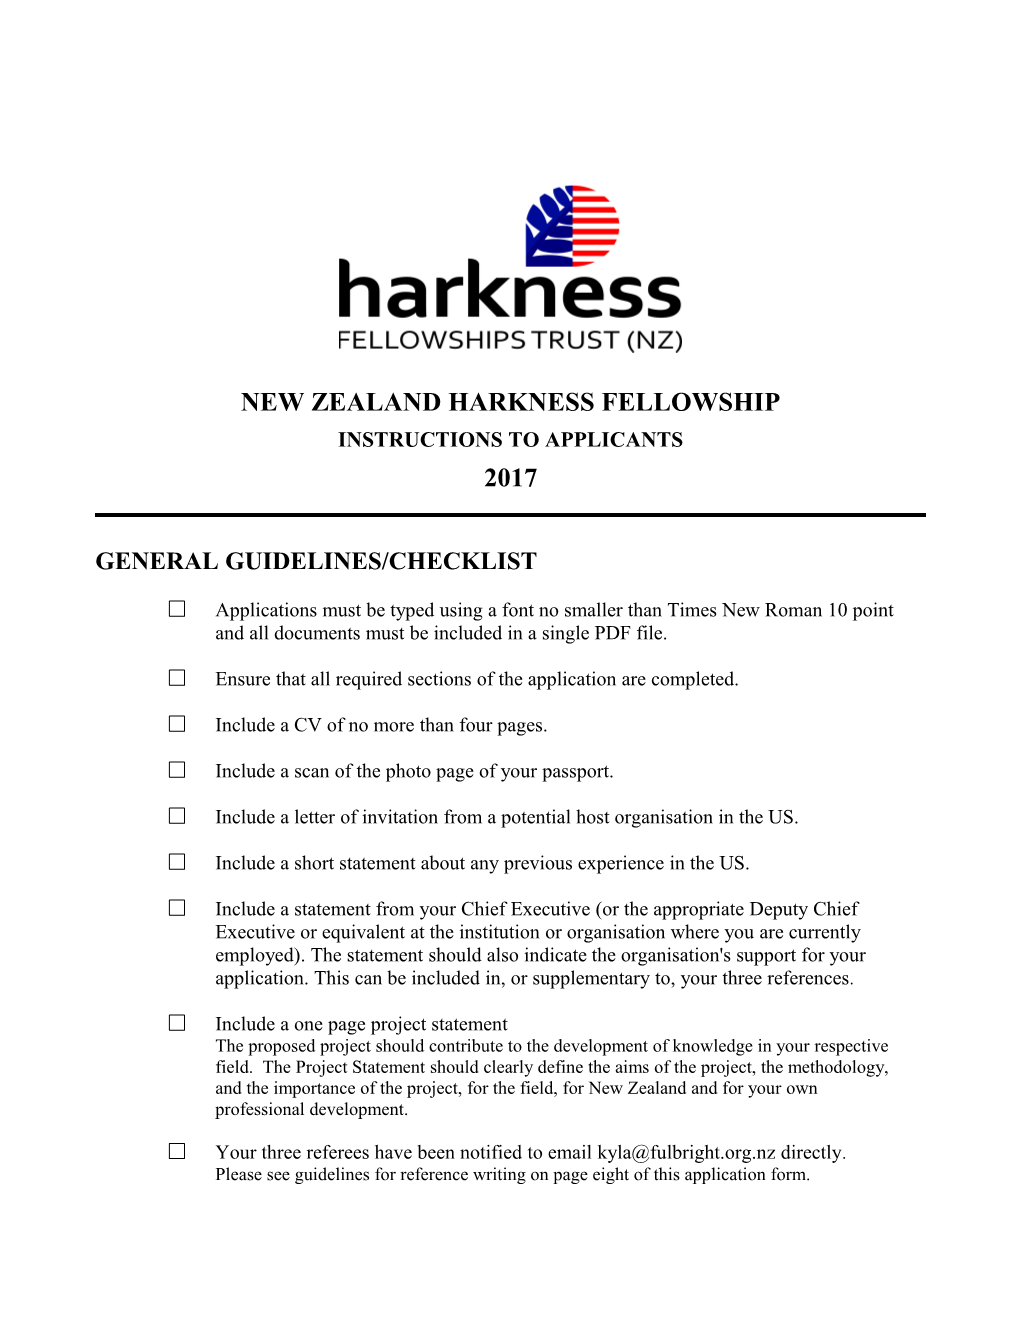 New Zealand Harkness Fellowship